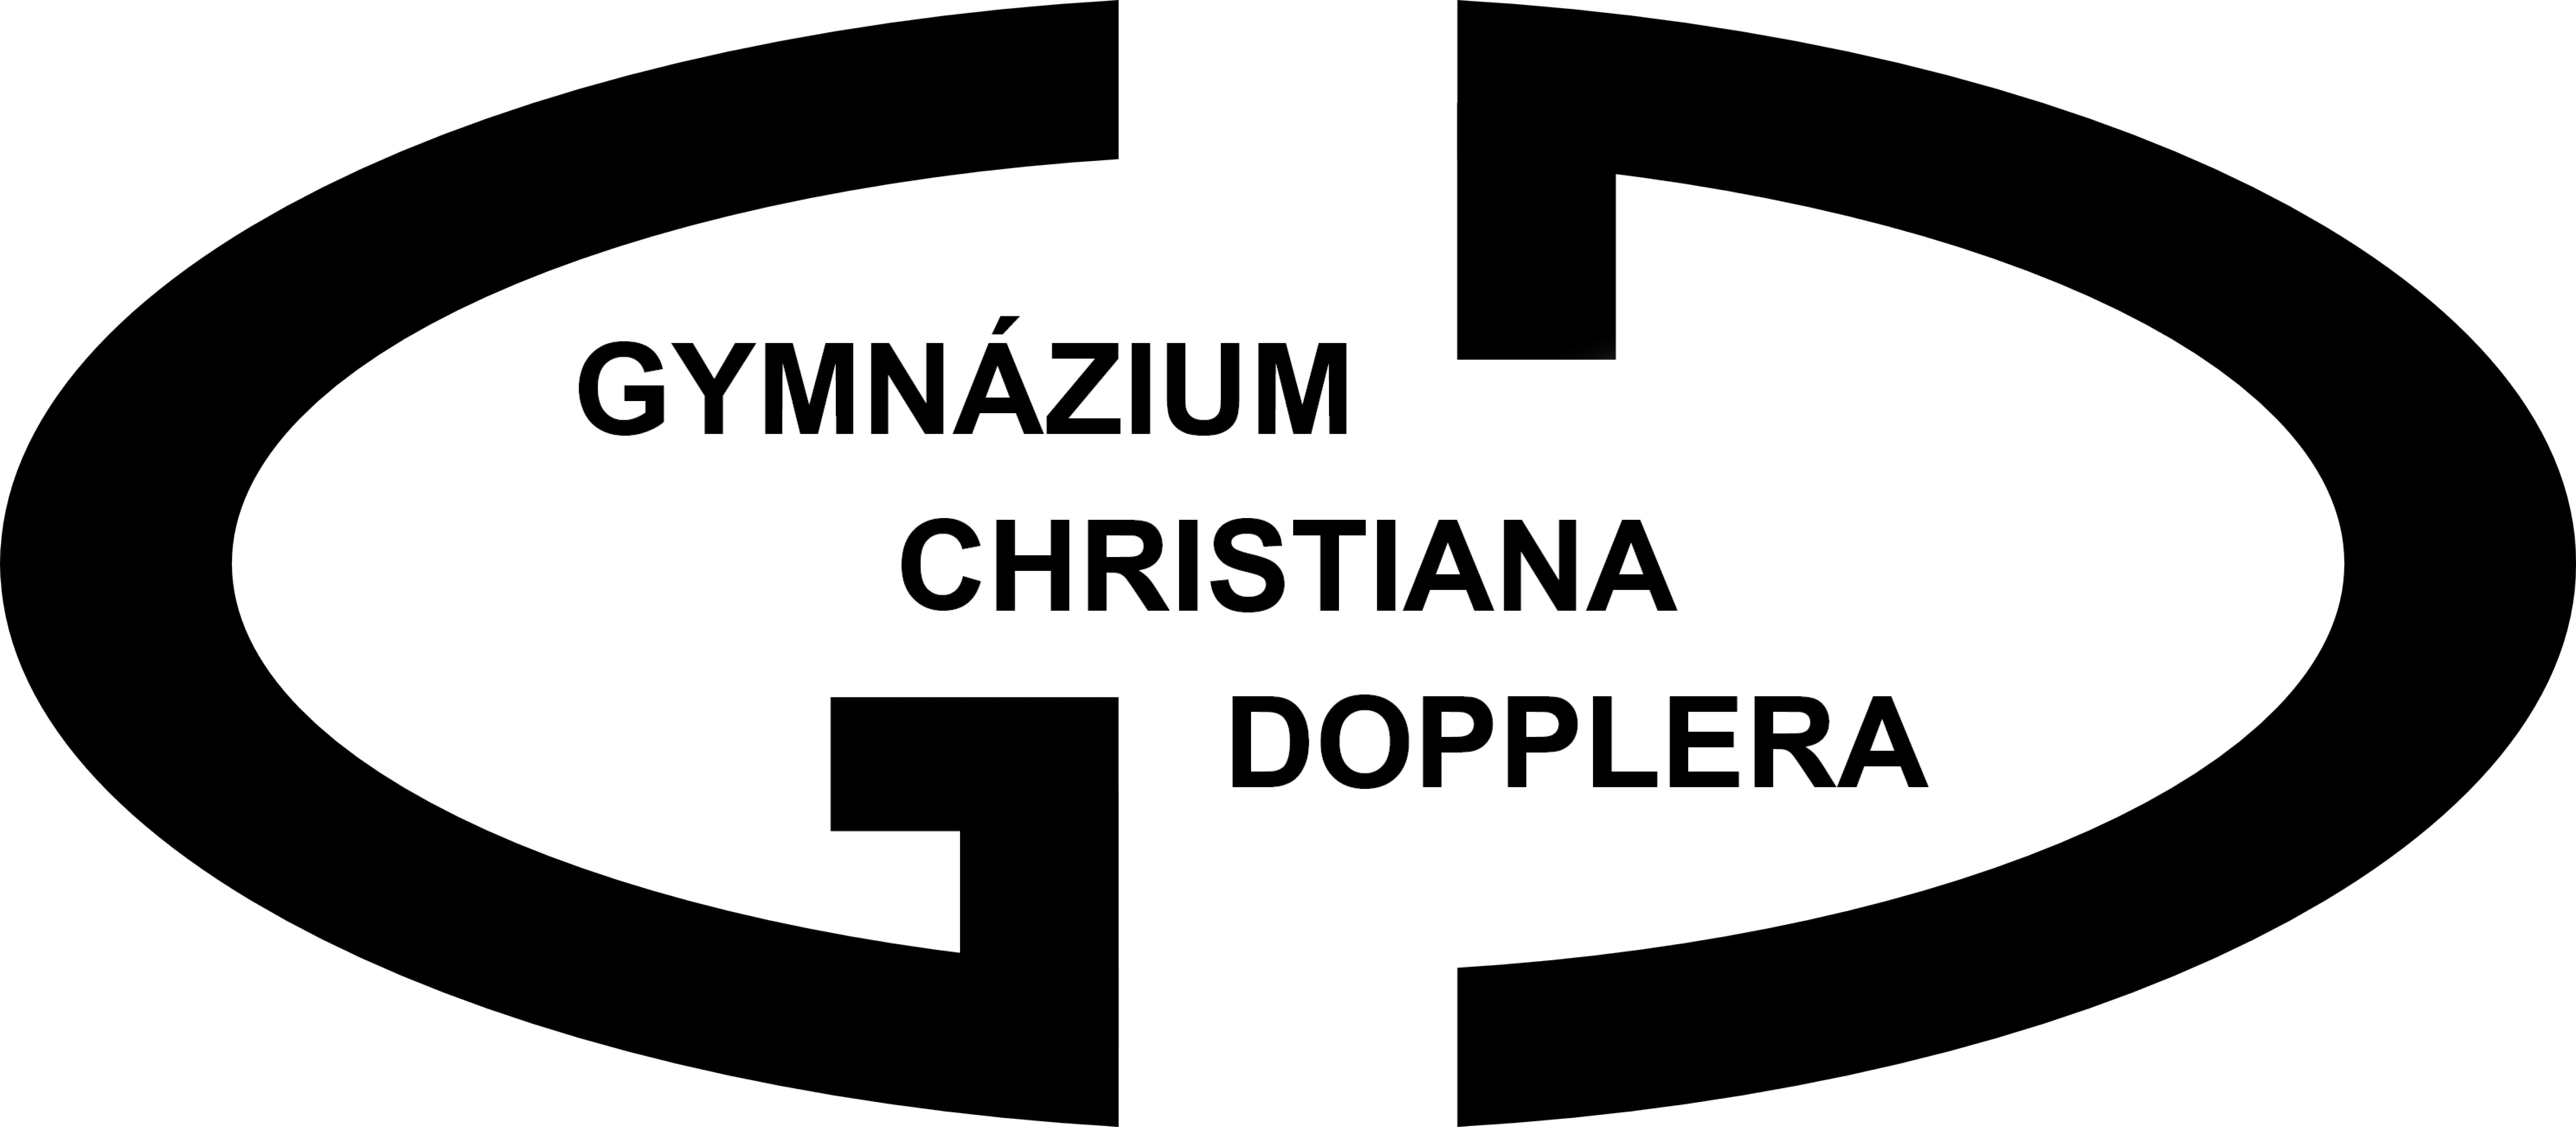 Dokumenty - Gymnázium Christiana Dopplera